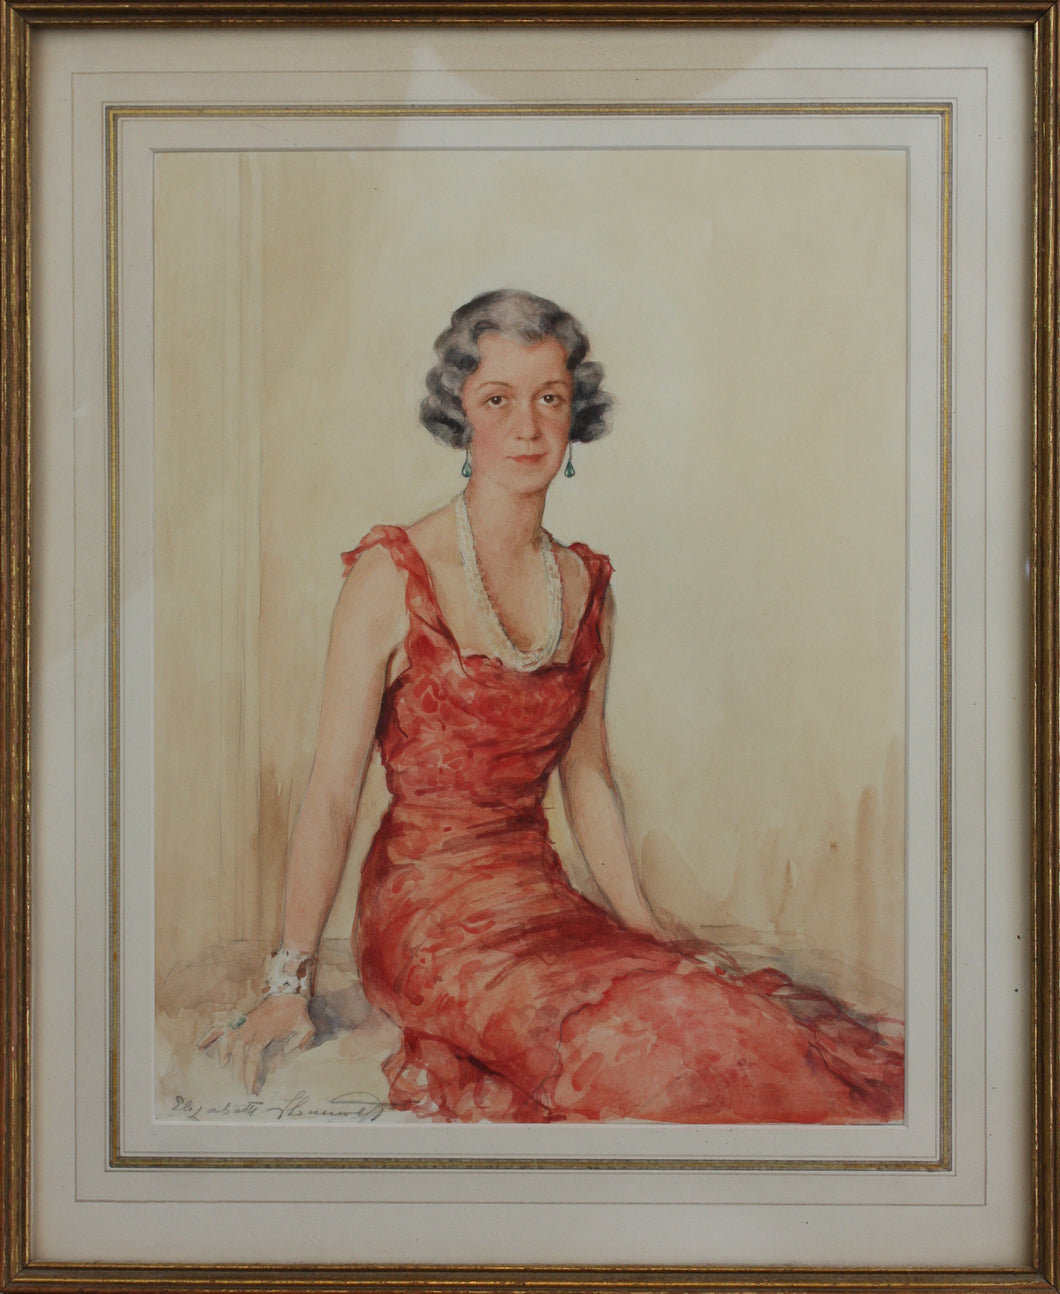 Elizabeth Shoumatoff. Watercolor portrait of Mary Louise Johnson Moreland. c.1950.